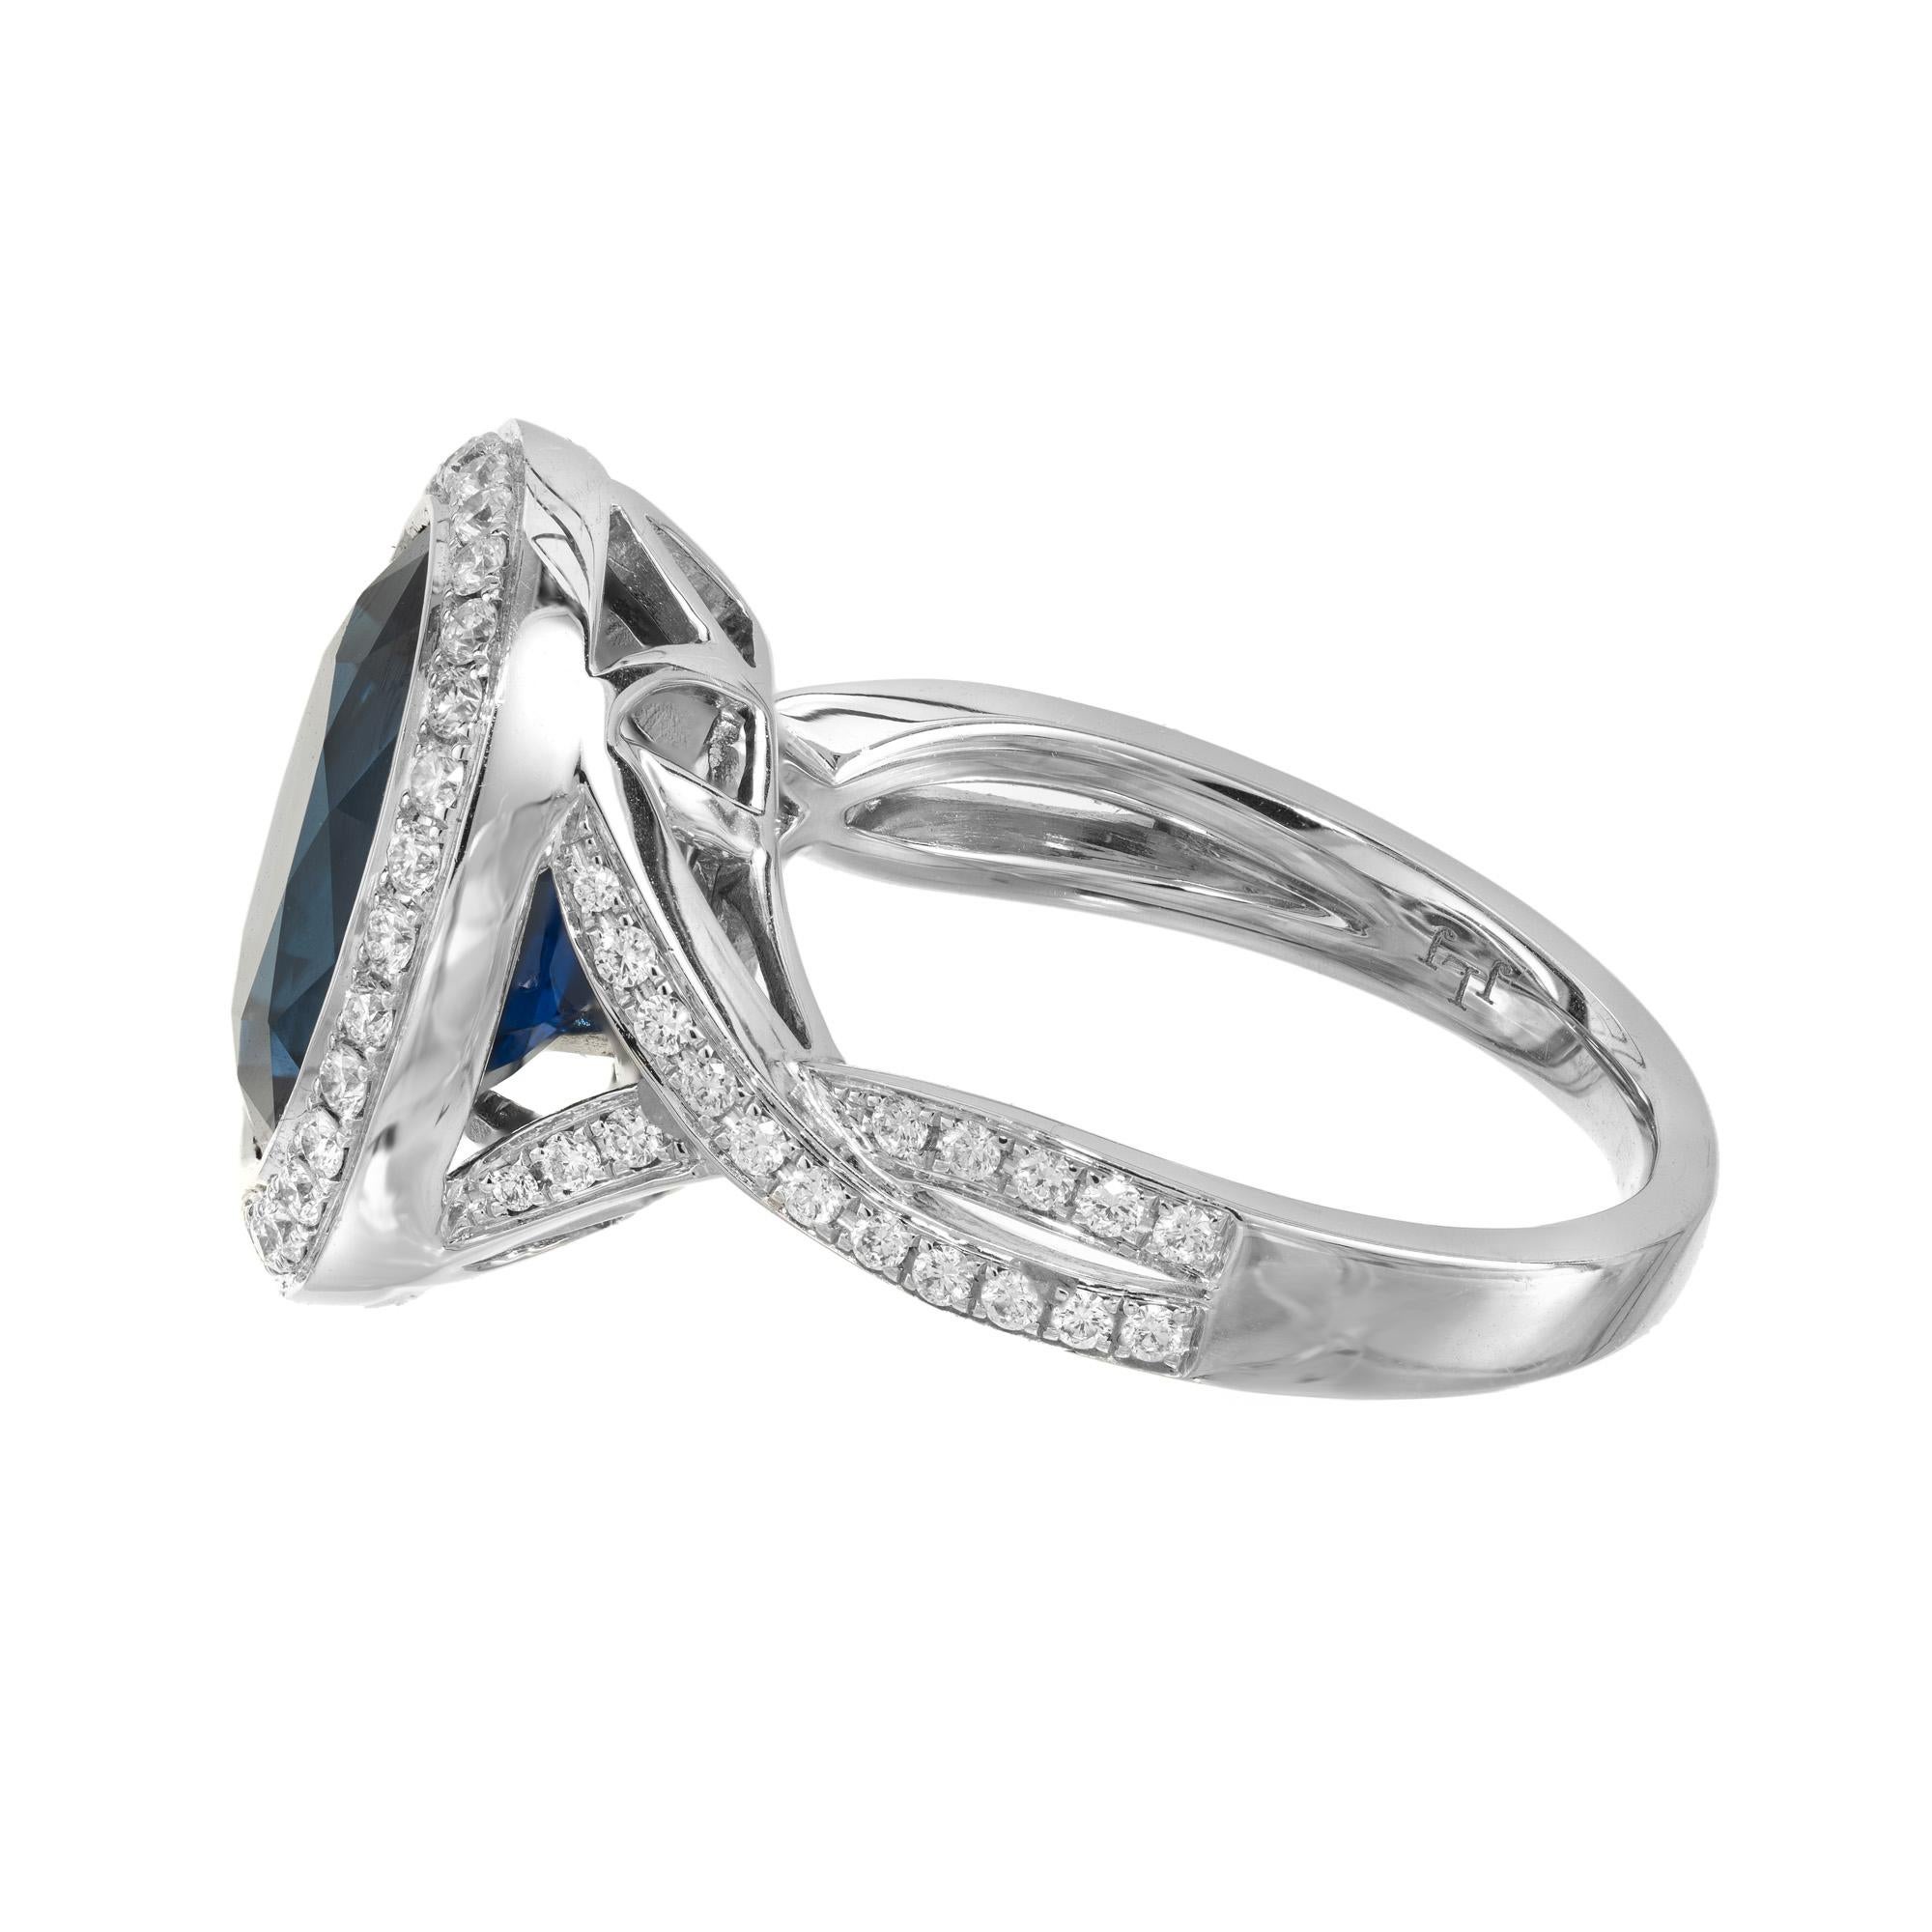 De las mujeres Peter Suchy GIA Anillo de compromiso de oro con diamante y zafiro azul ovalado de 6,50 quilates en venta